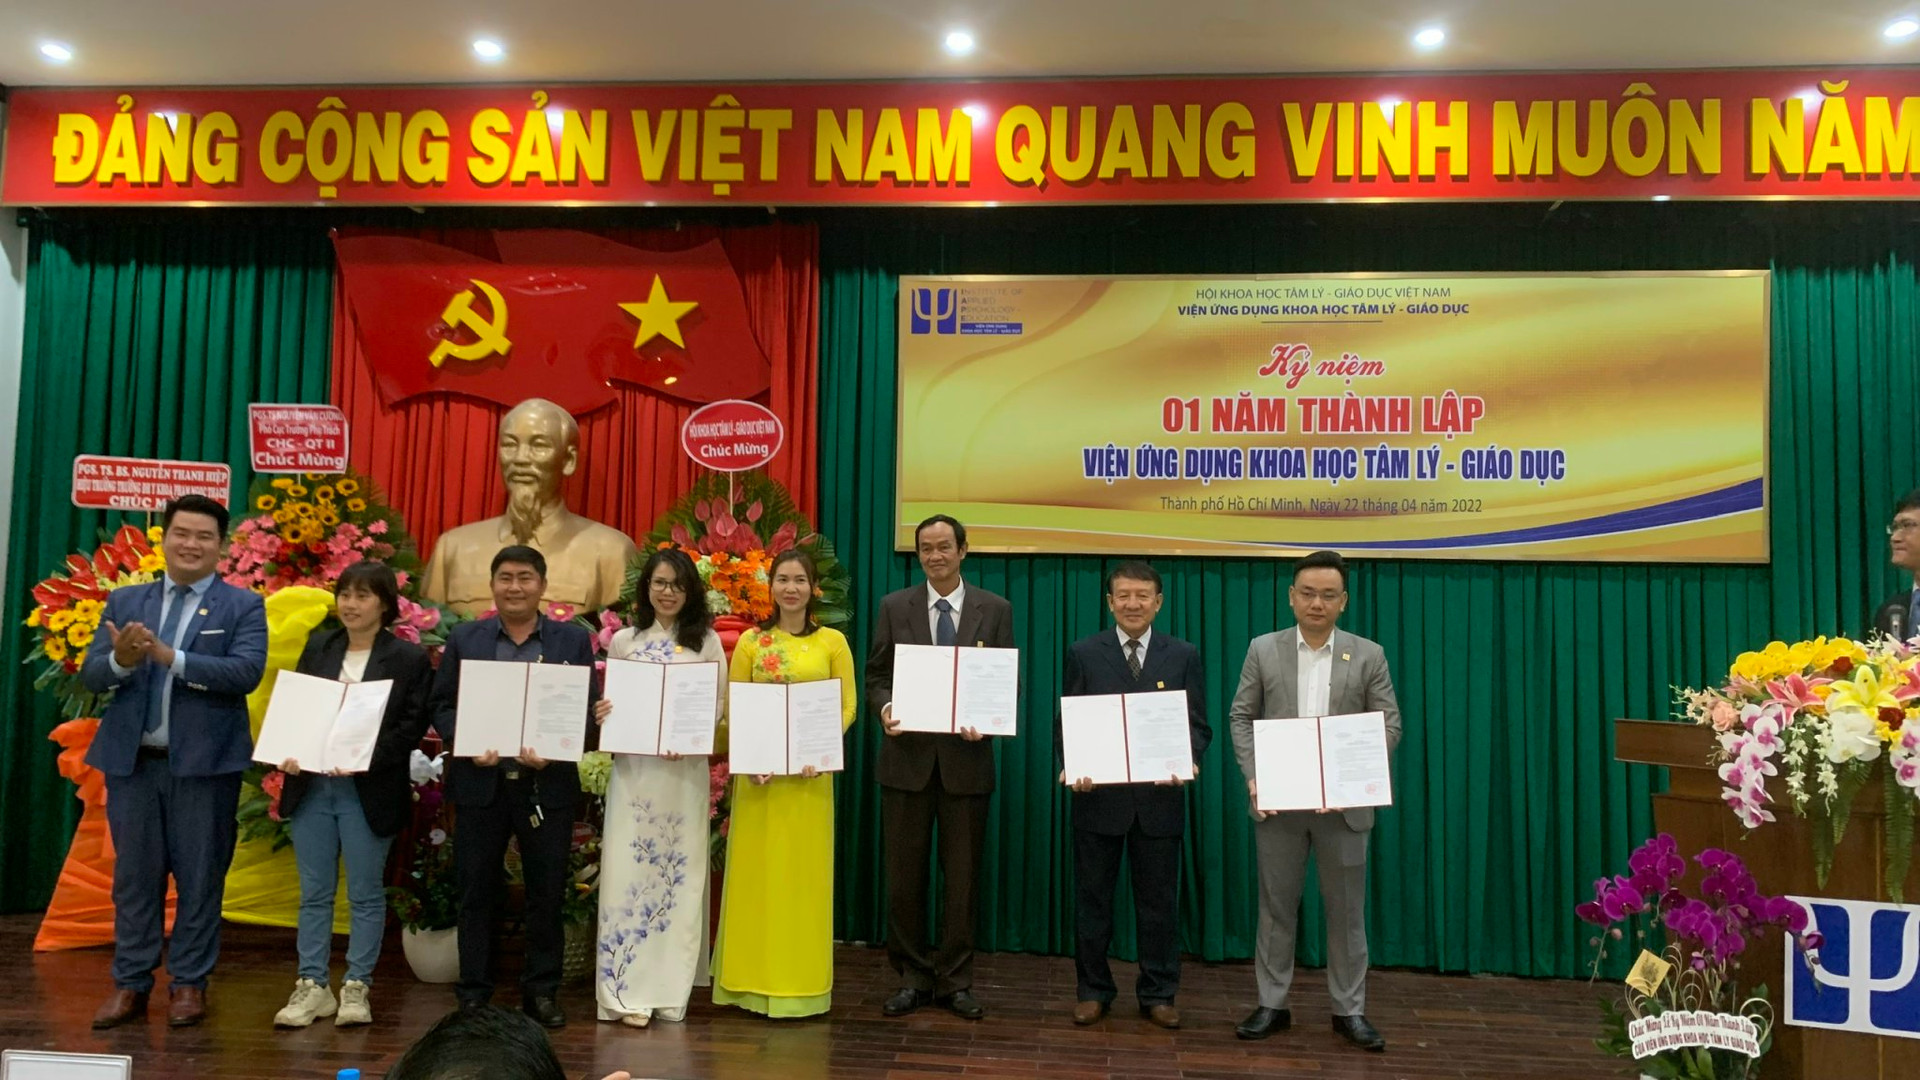 Ông Phạm Văn Giào, Viện trưởng Viện Ứng dụng Khoa học tâm lý - Giáo dục  trao các quyết định về nhân sự.